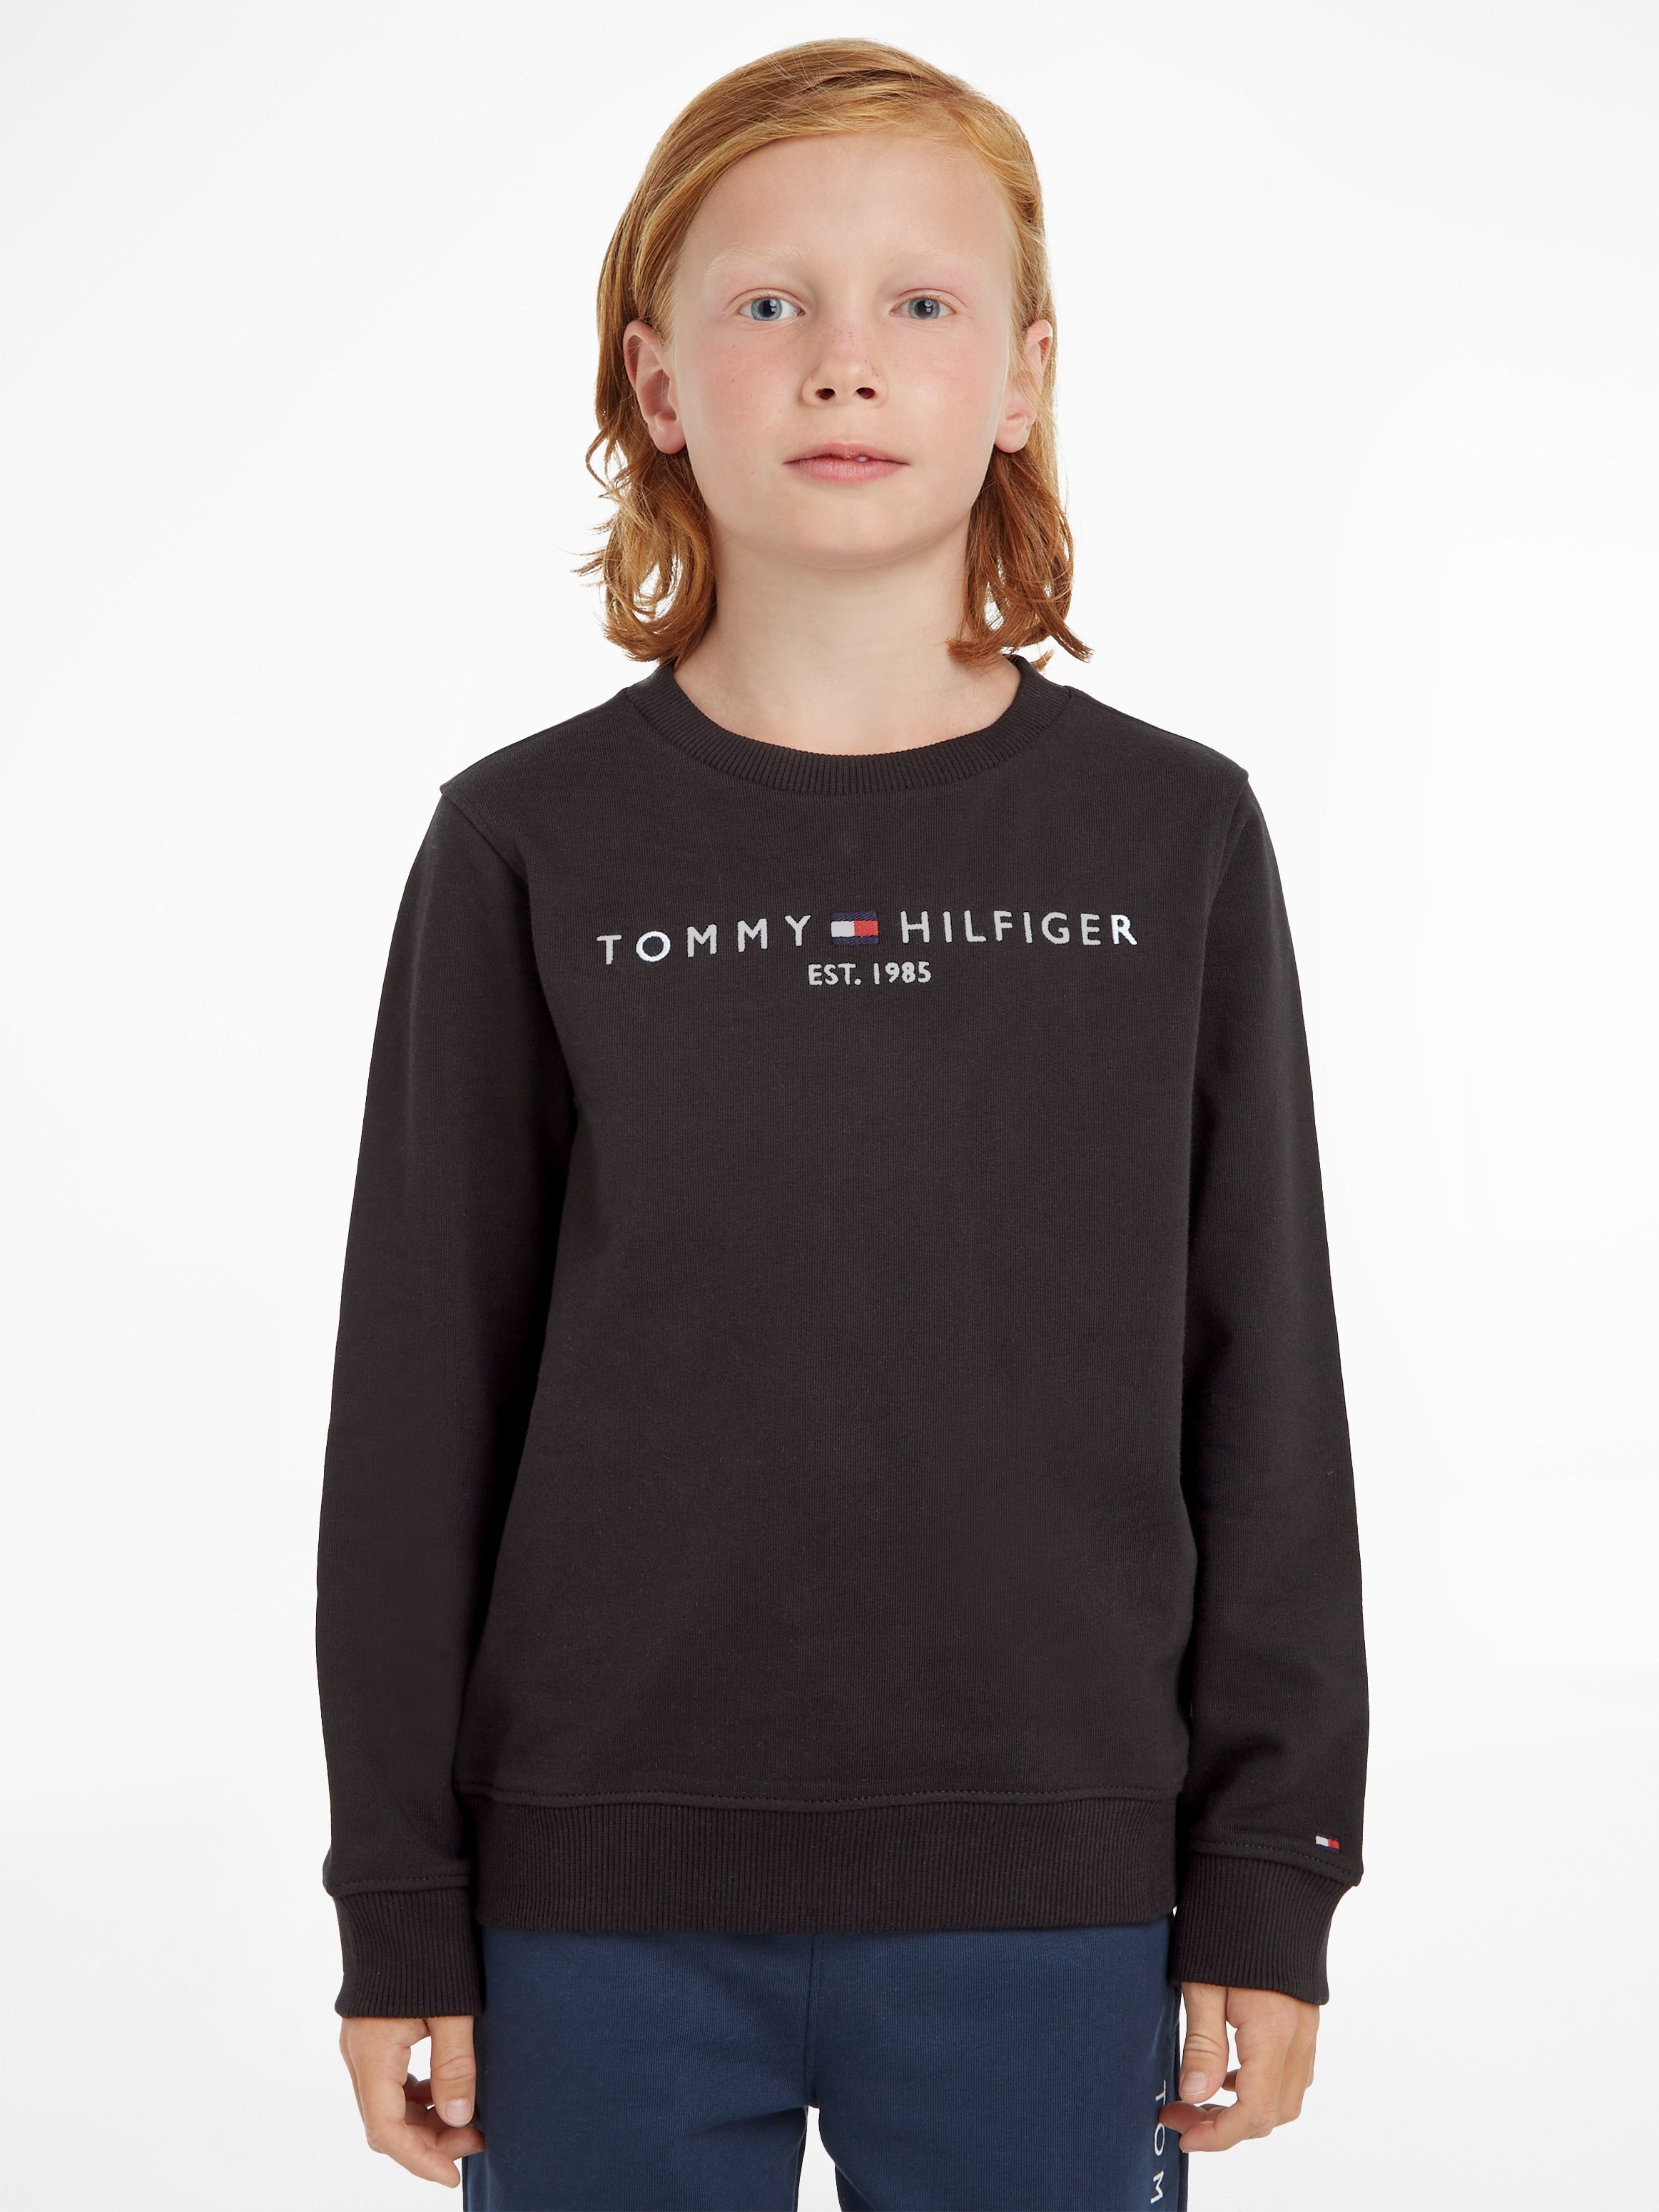 Shop OTTO Tommy im Hilfiger Online Sweatshirt